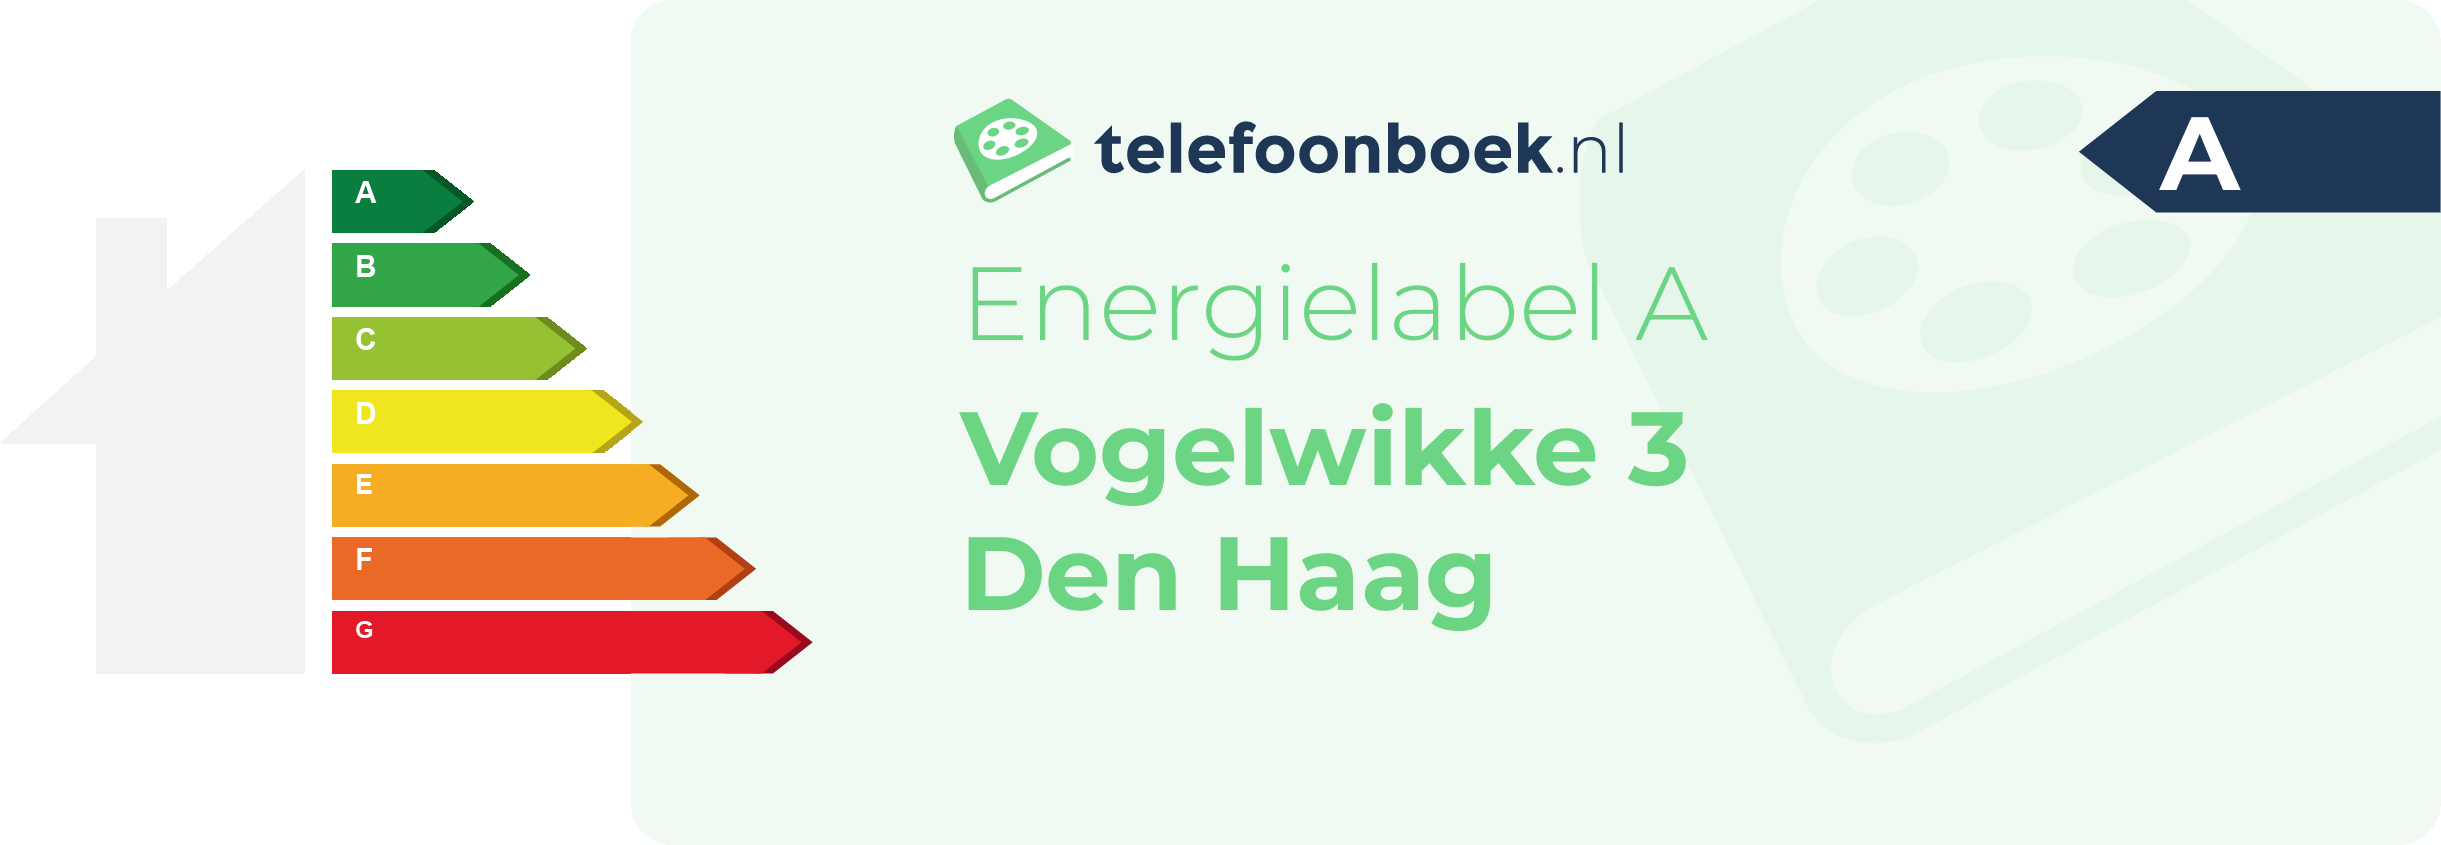 Energielabel Vogelwikke 3 Den Haag